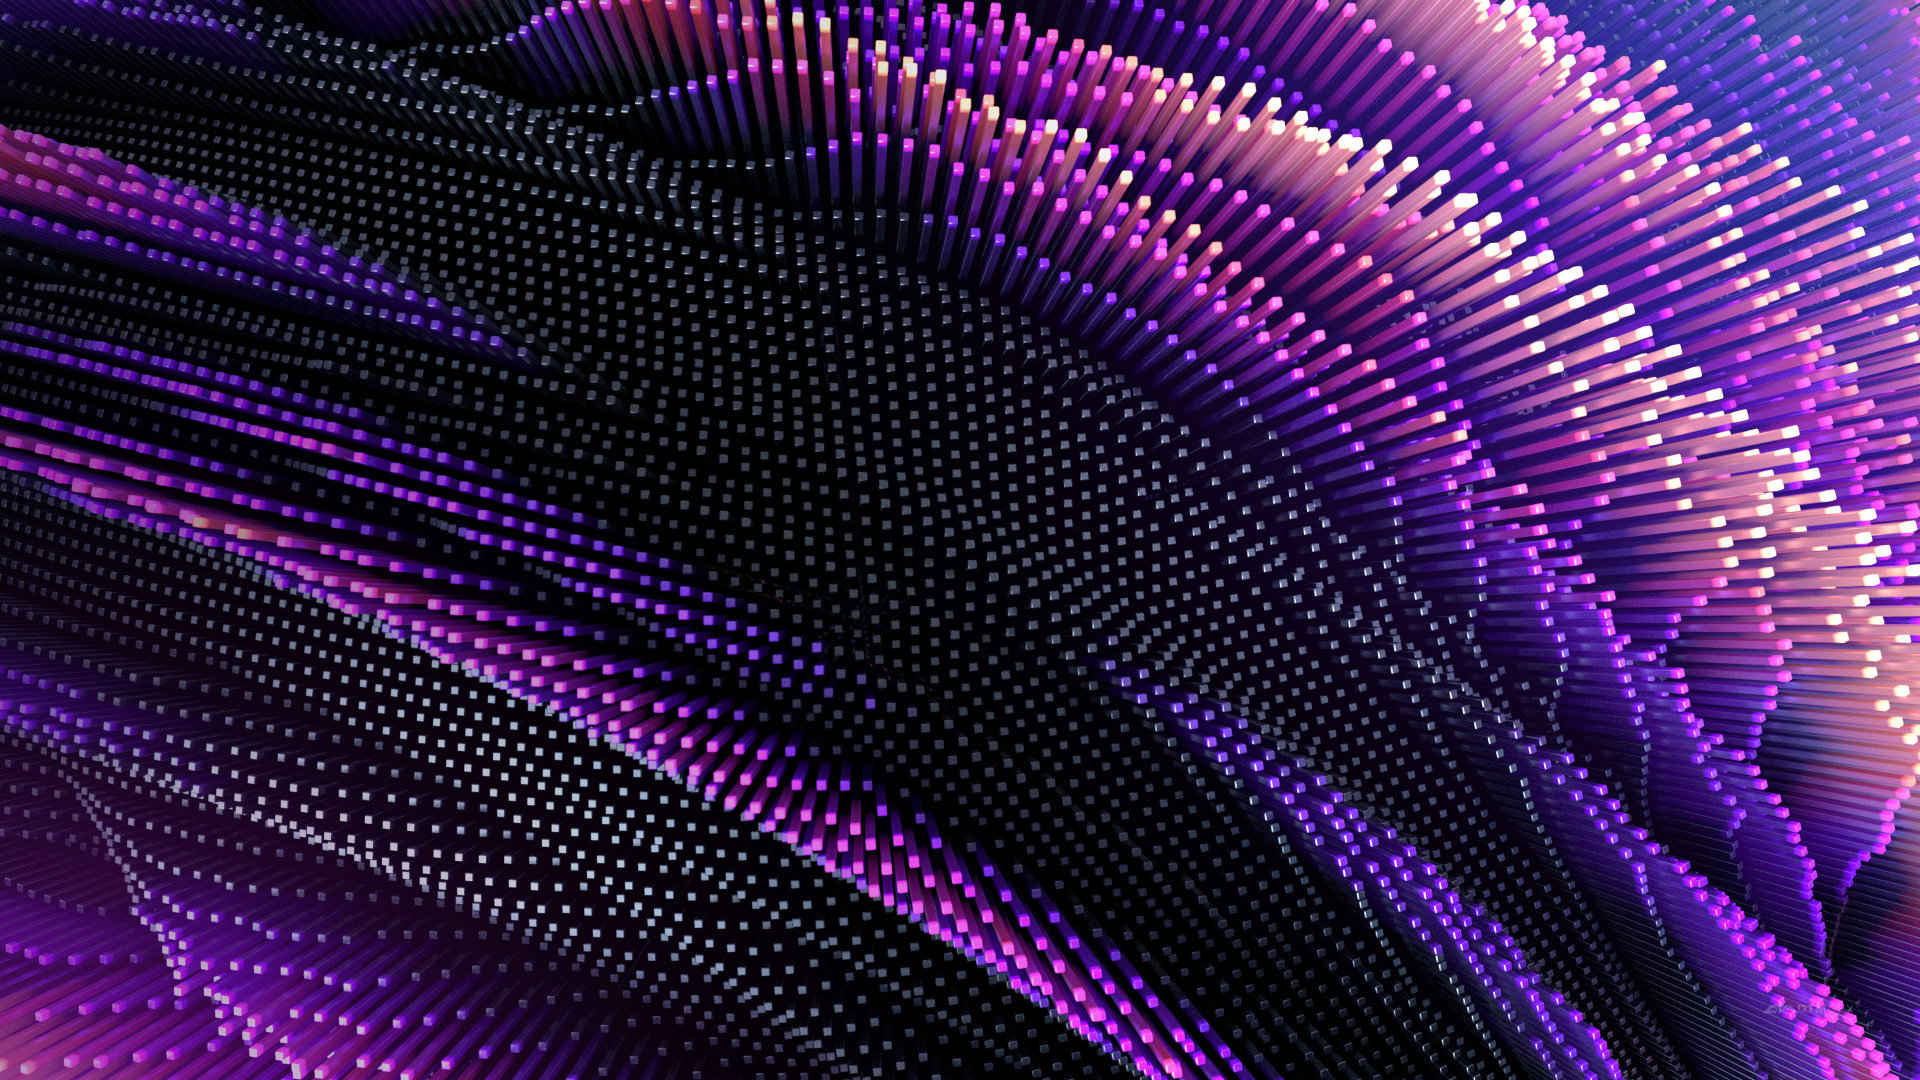 紫色条状精美电脑壁纸 高清-